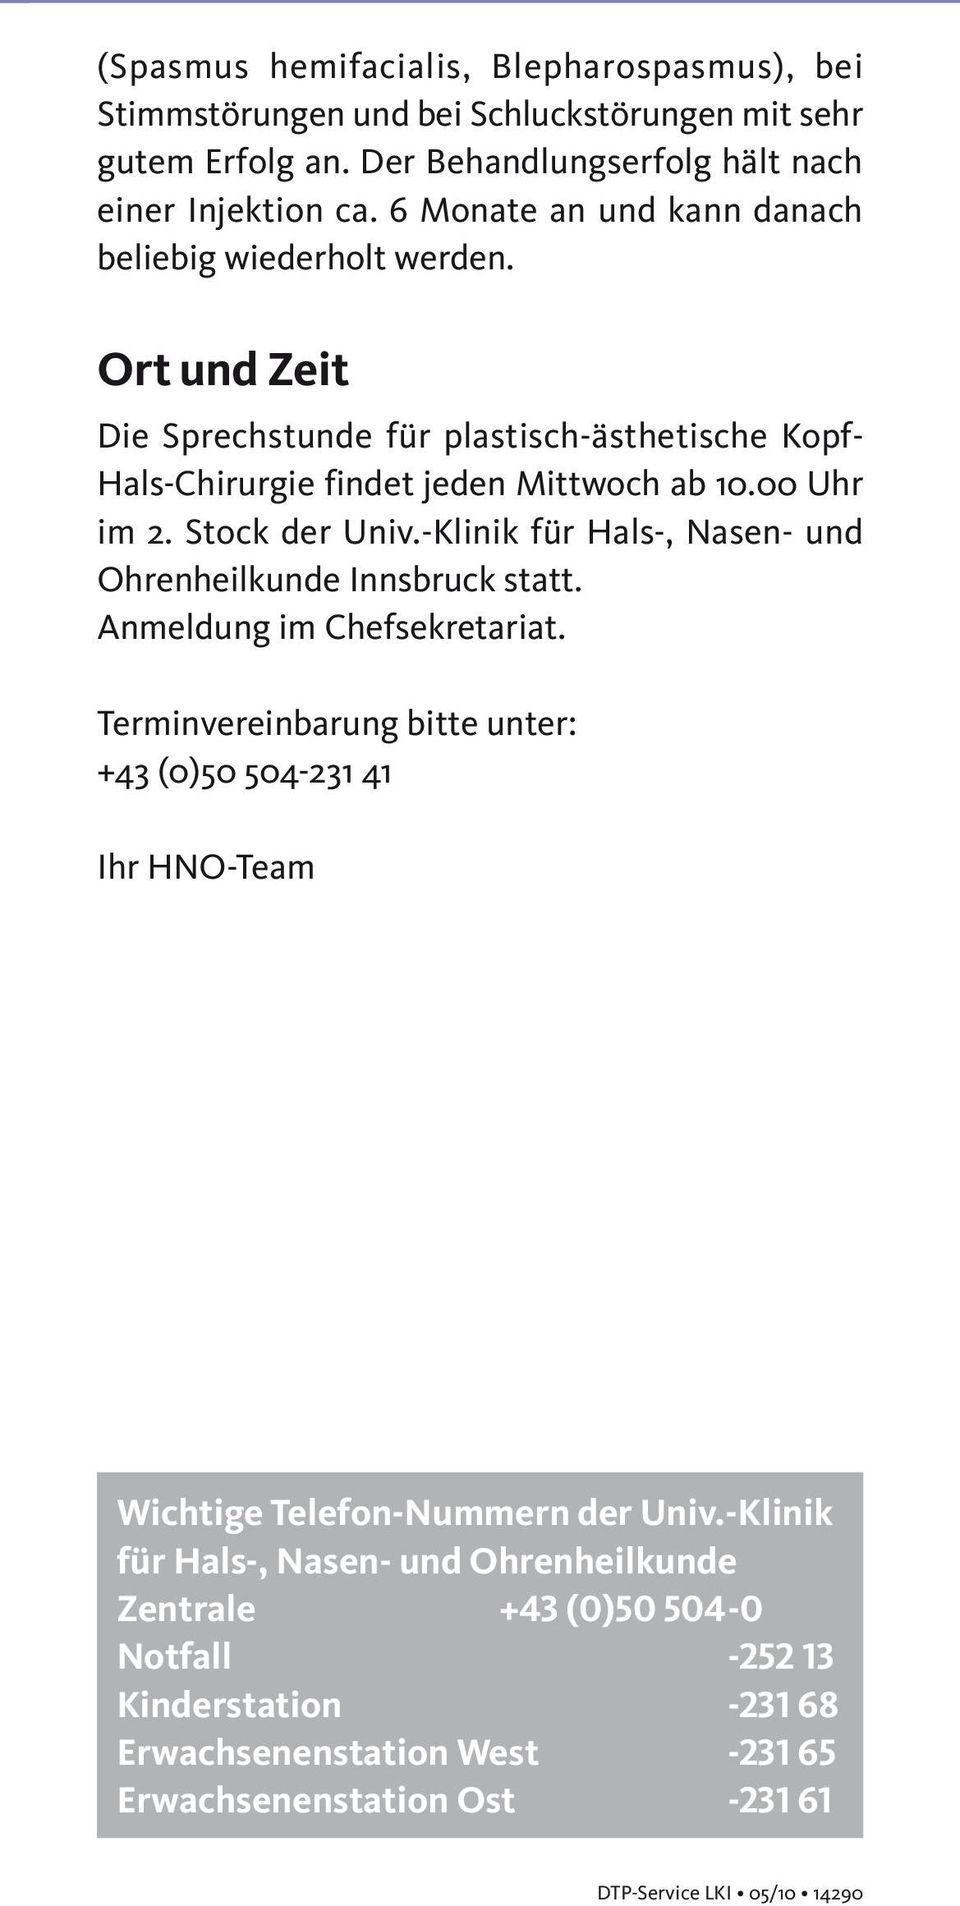 Stock der Univ.-Klinik für Hals-, Nasen- und Ohrenheilkunde Innsbruck statt. Anmeldung im Chefsekretariat.